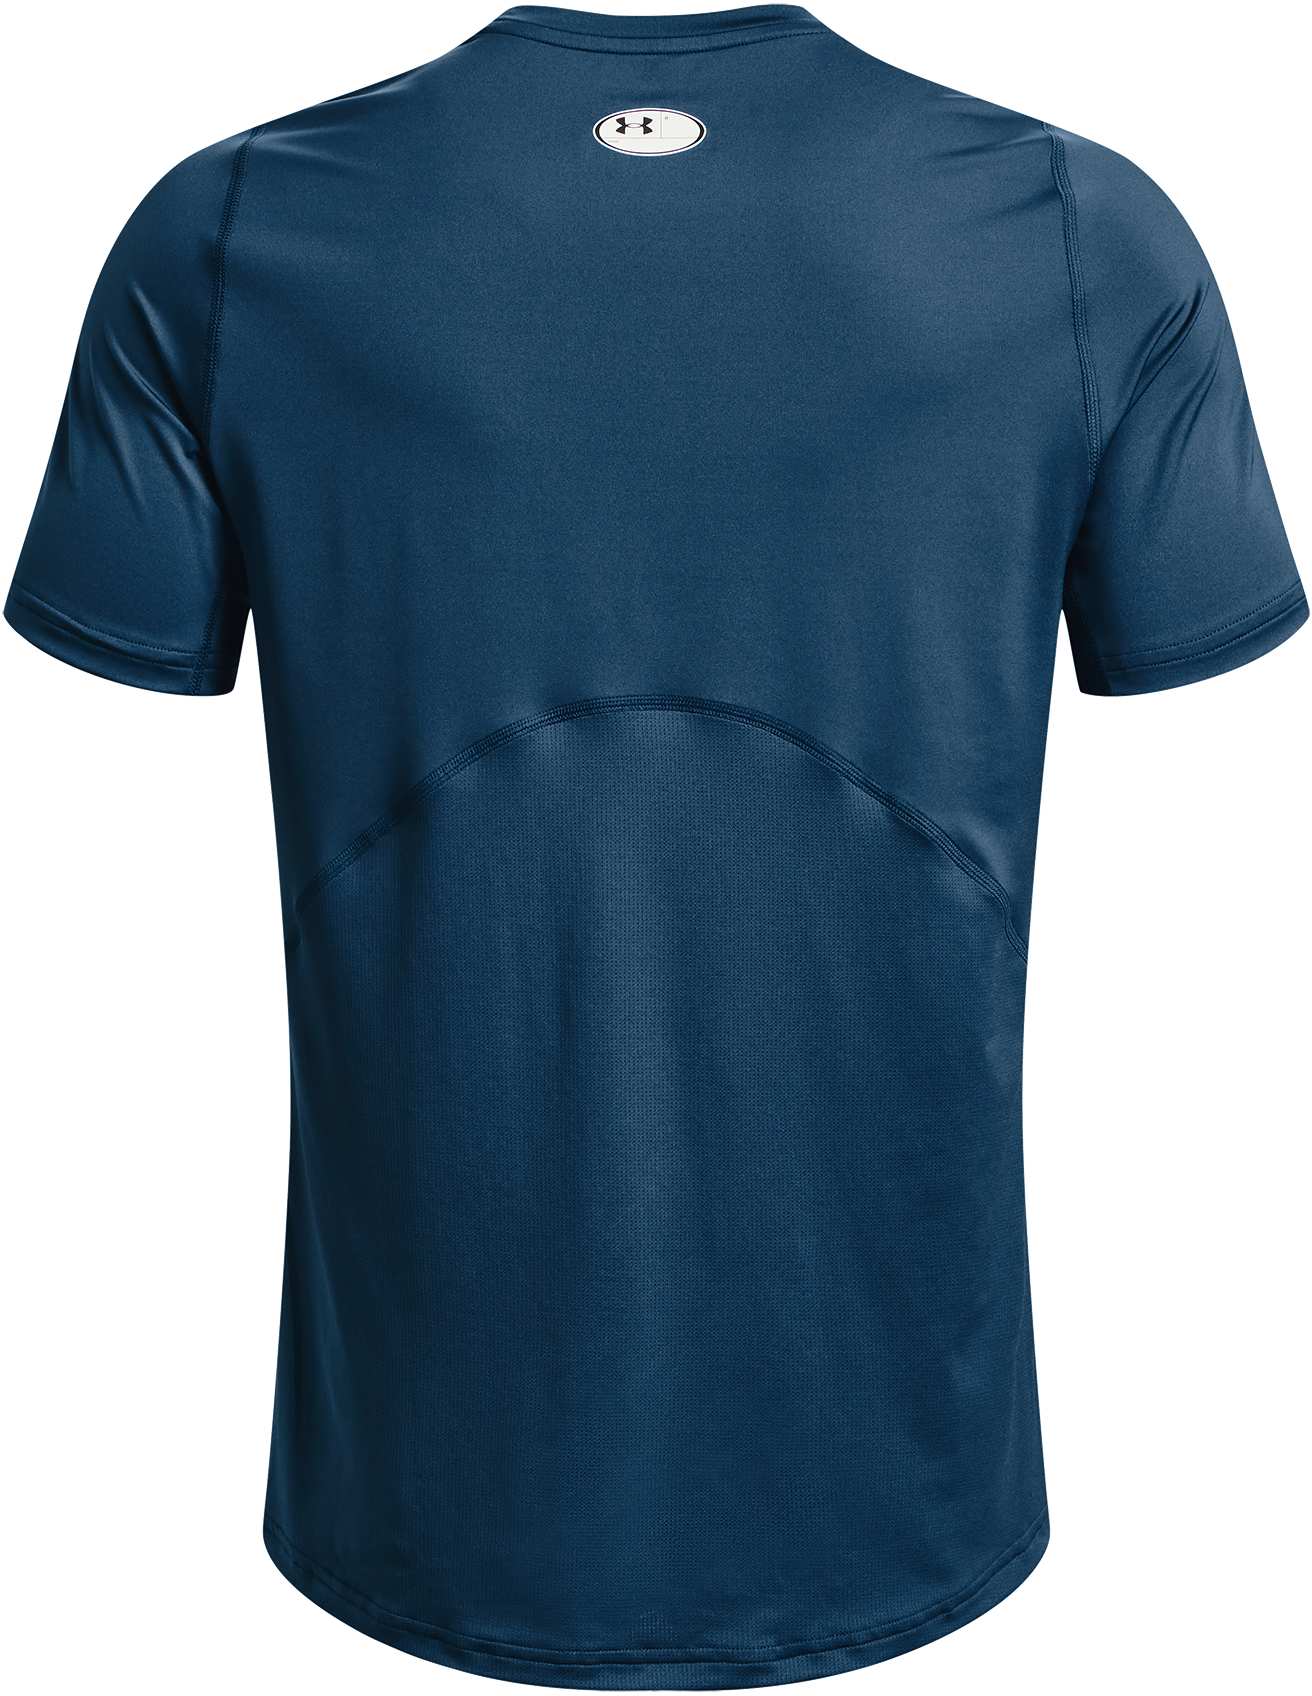 Men’s short sleeve T-shirt